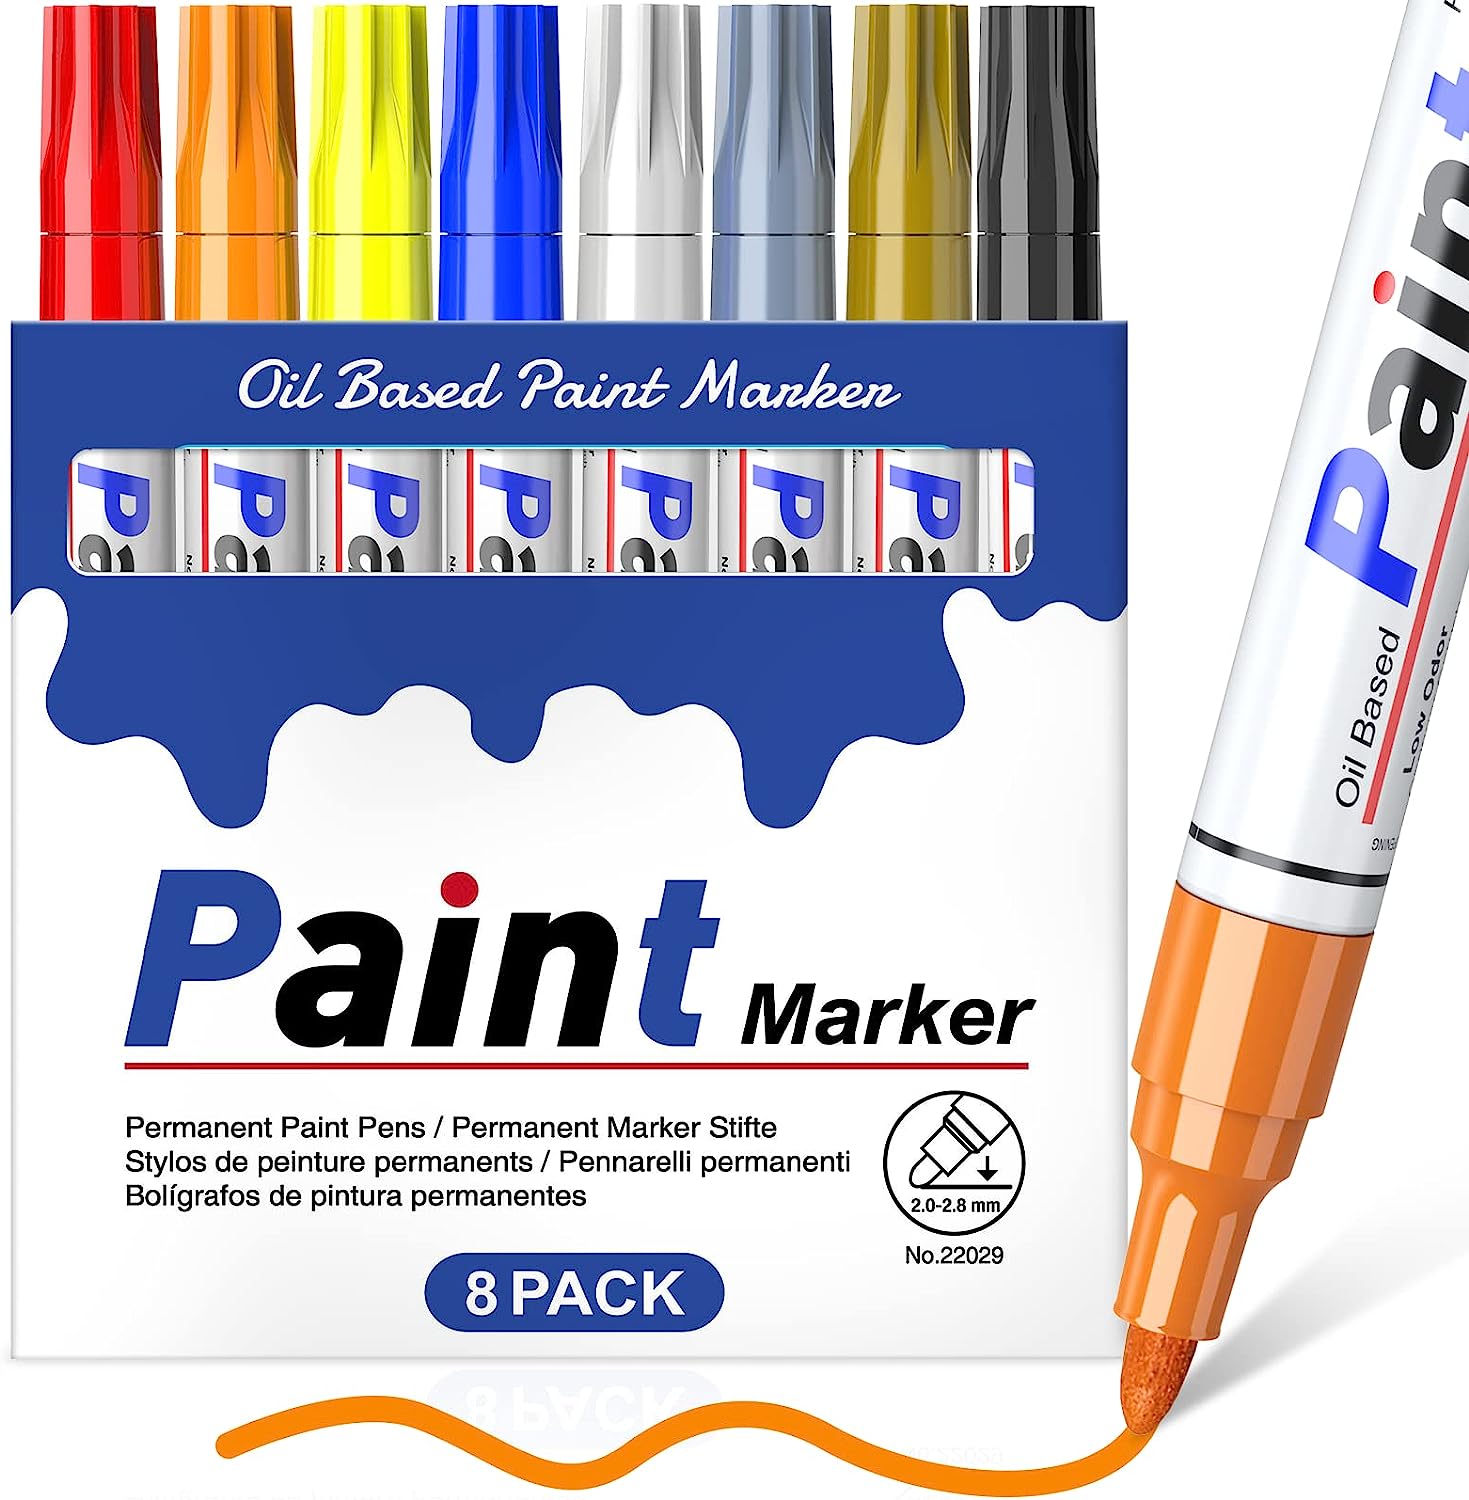 Permanent Paint Pens Paint Markers for Plastic [...]